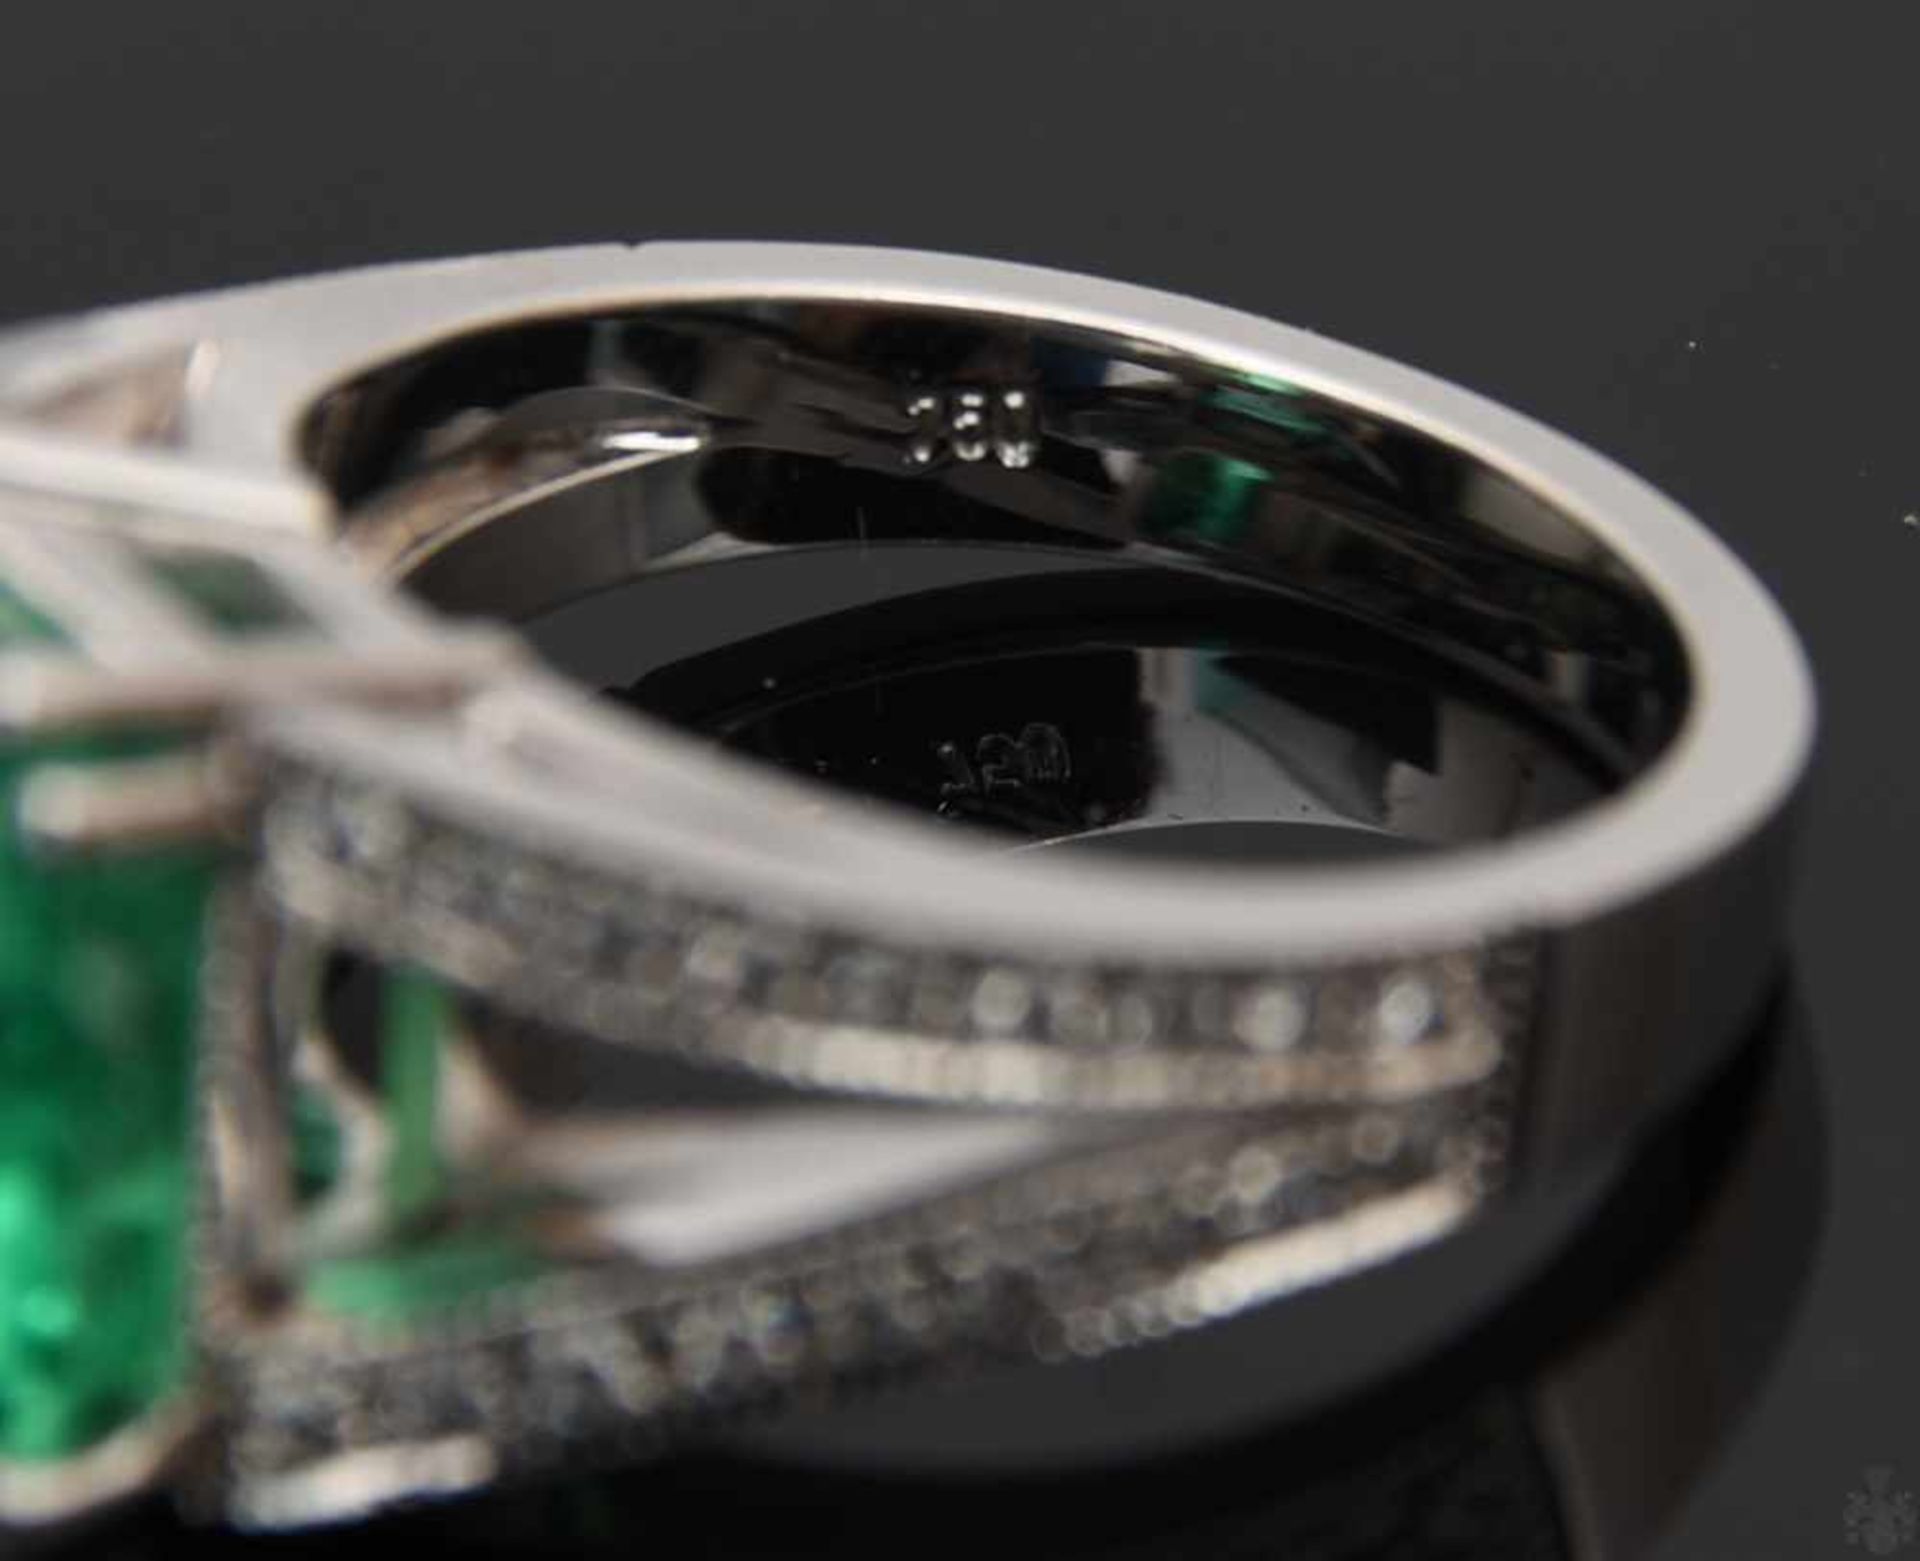 RING MIT SMARAGD UND BRILLIANTEN.Ring mit Smaragd und Brillianten, WG 750/000. 36 Brillianten zus. - Bild 7 aus 16